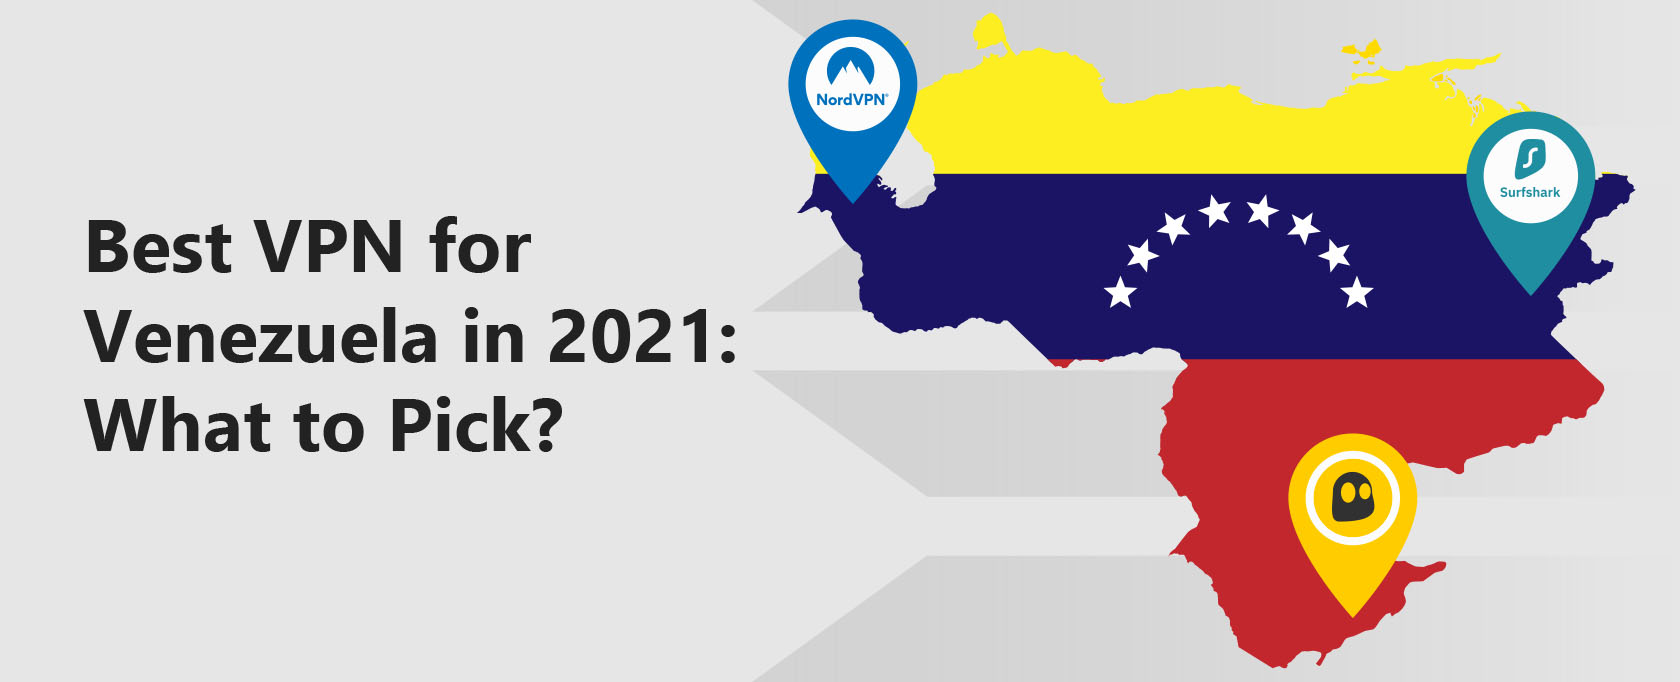 Best VPN for Venezuela in 2022: Top Choices that Work